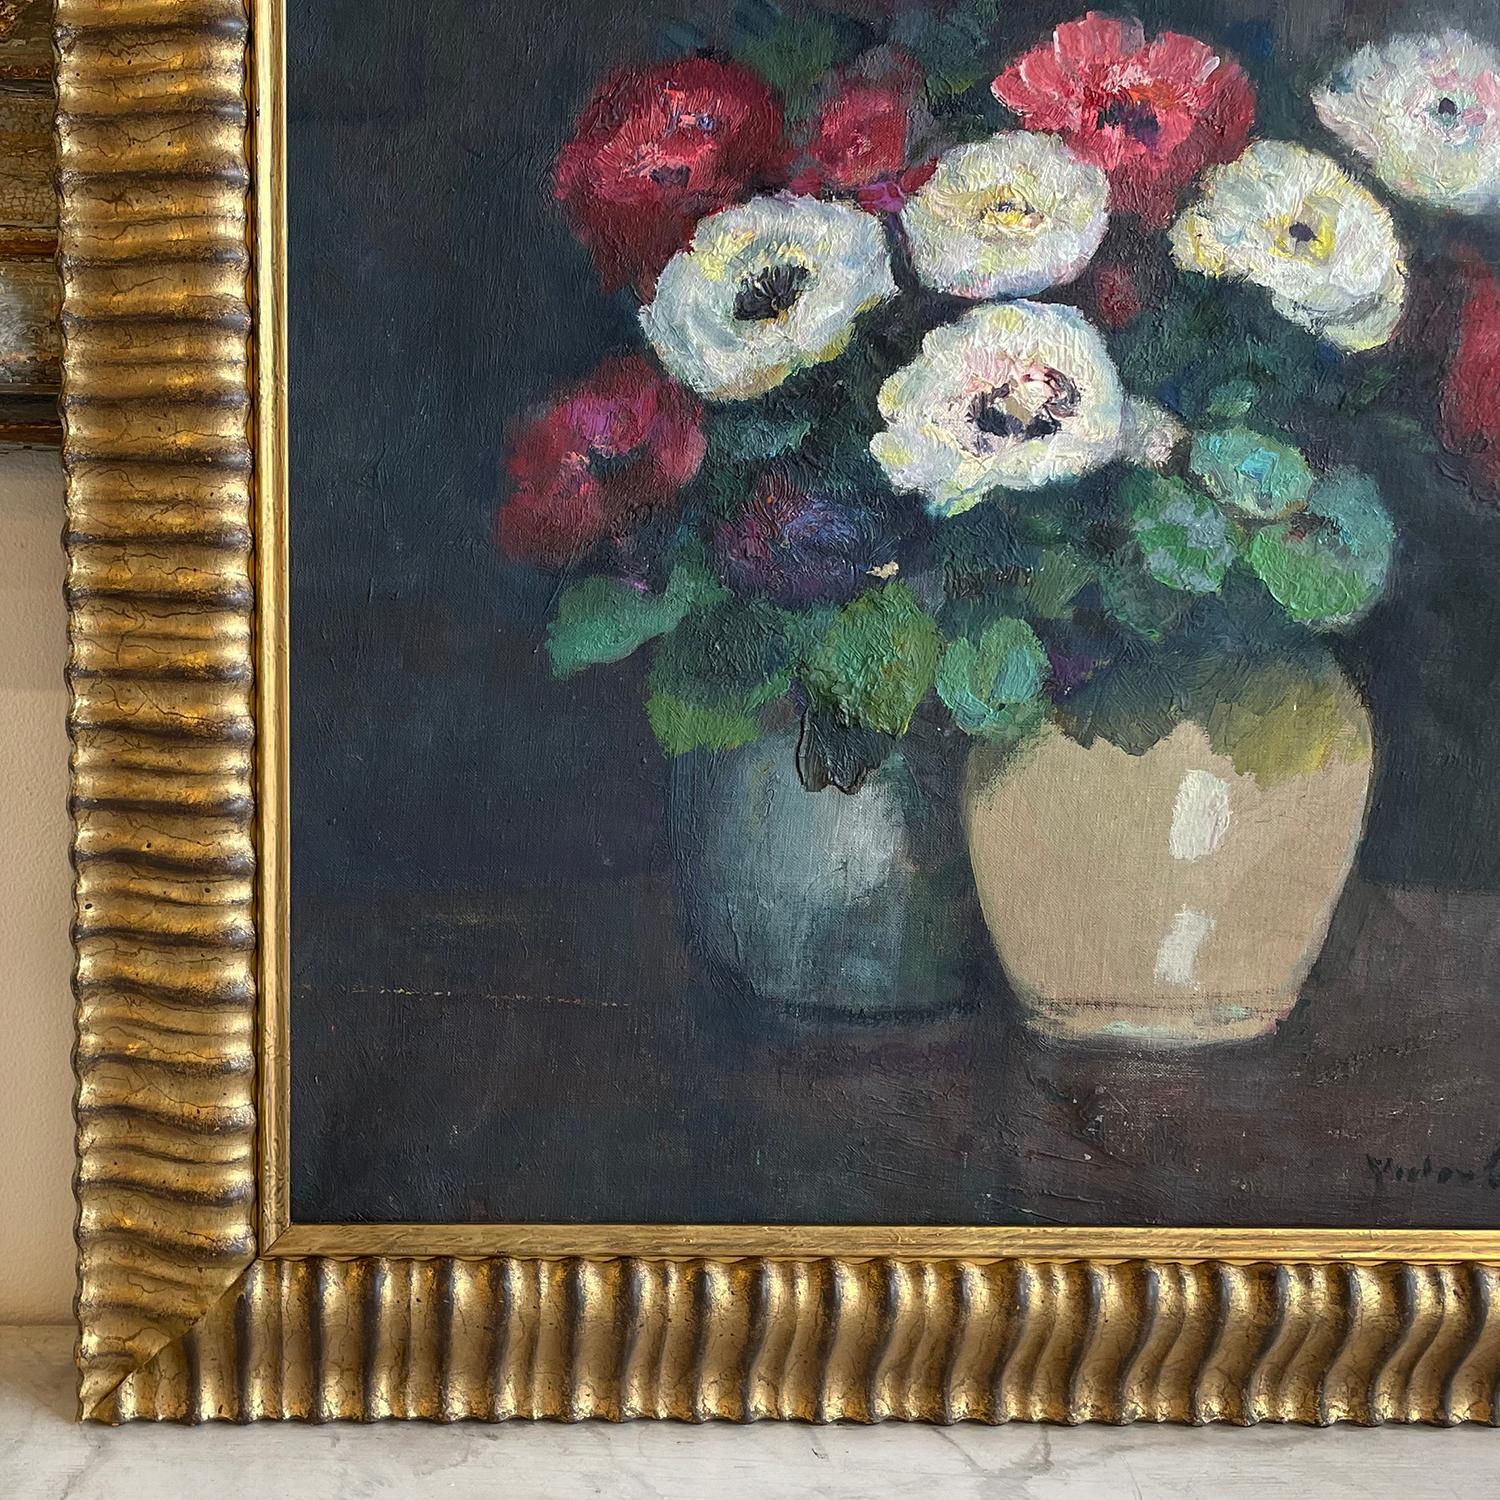 Ein französisches Öl auf Leinwand Gemälde von zwei bunten Vasen mit roten und weißen Anemonen, Blumen gemalt von Victor Charreton, in gutem Zustand. Die blauen und cremefarbenen Vasen stehen auf einem hölzernen Arbeitstisch. Das antike Gemälde